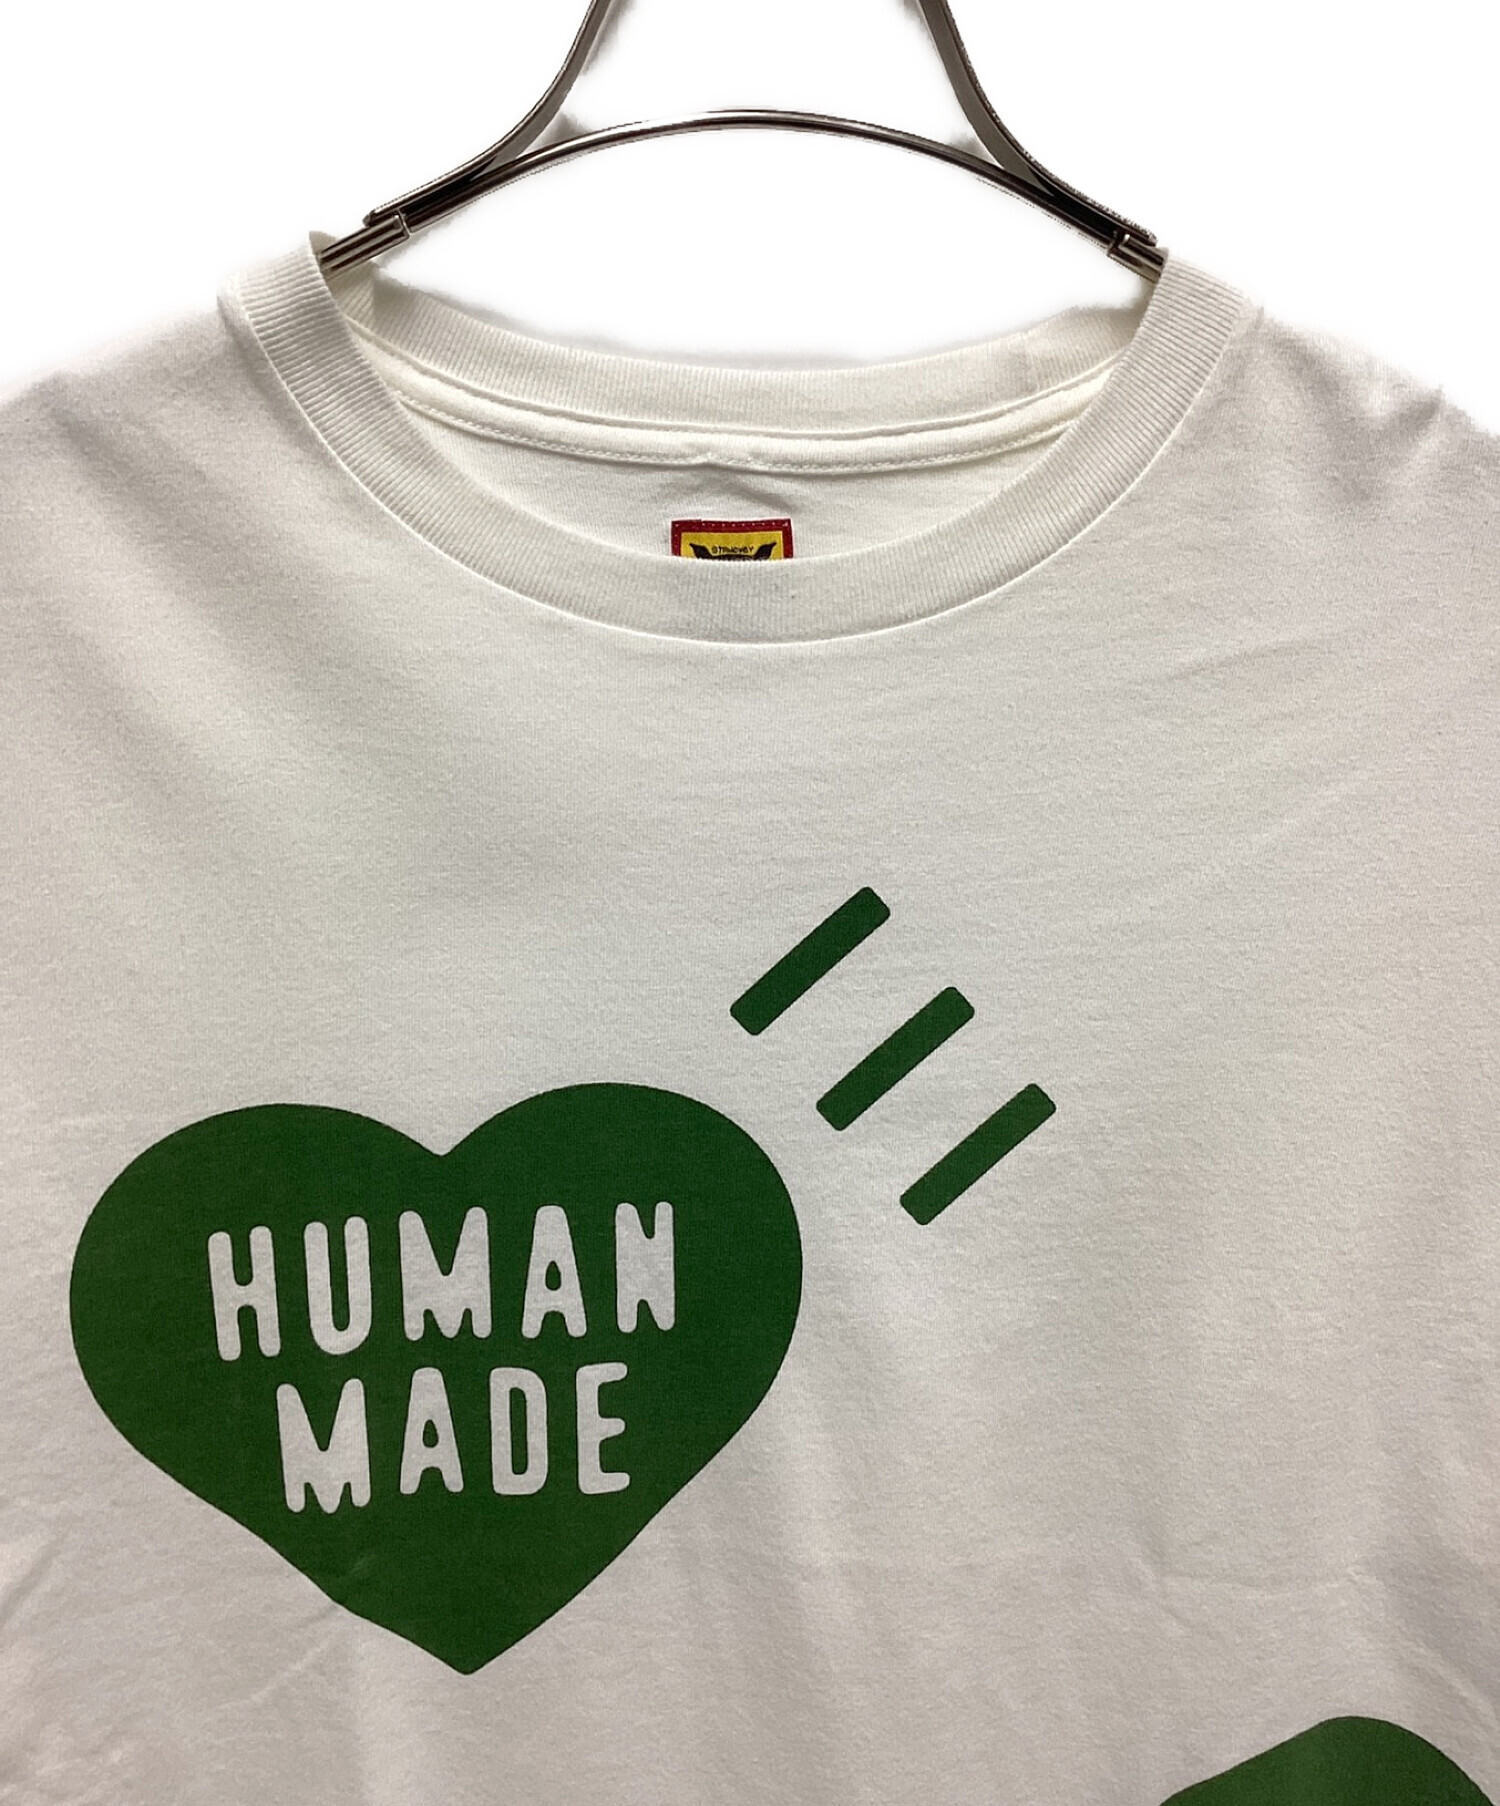 京都限定のTシャツですHUMAN MADE HEART T-SHIRT GREEN Mサイズ